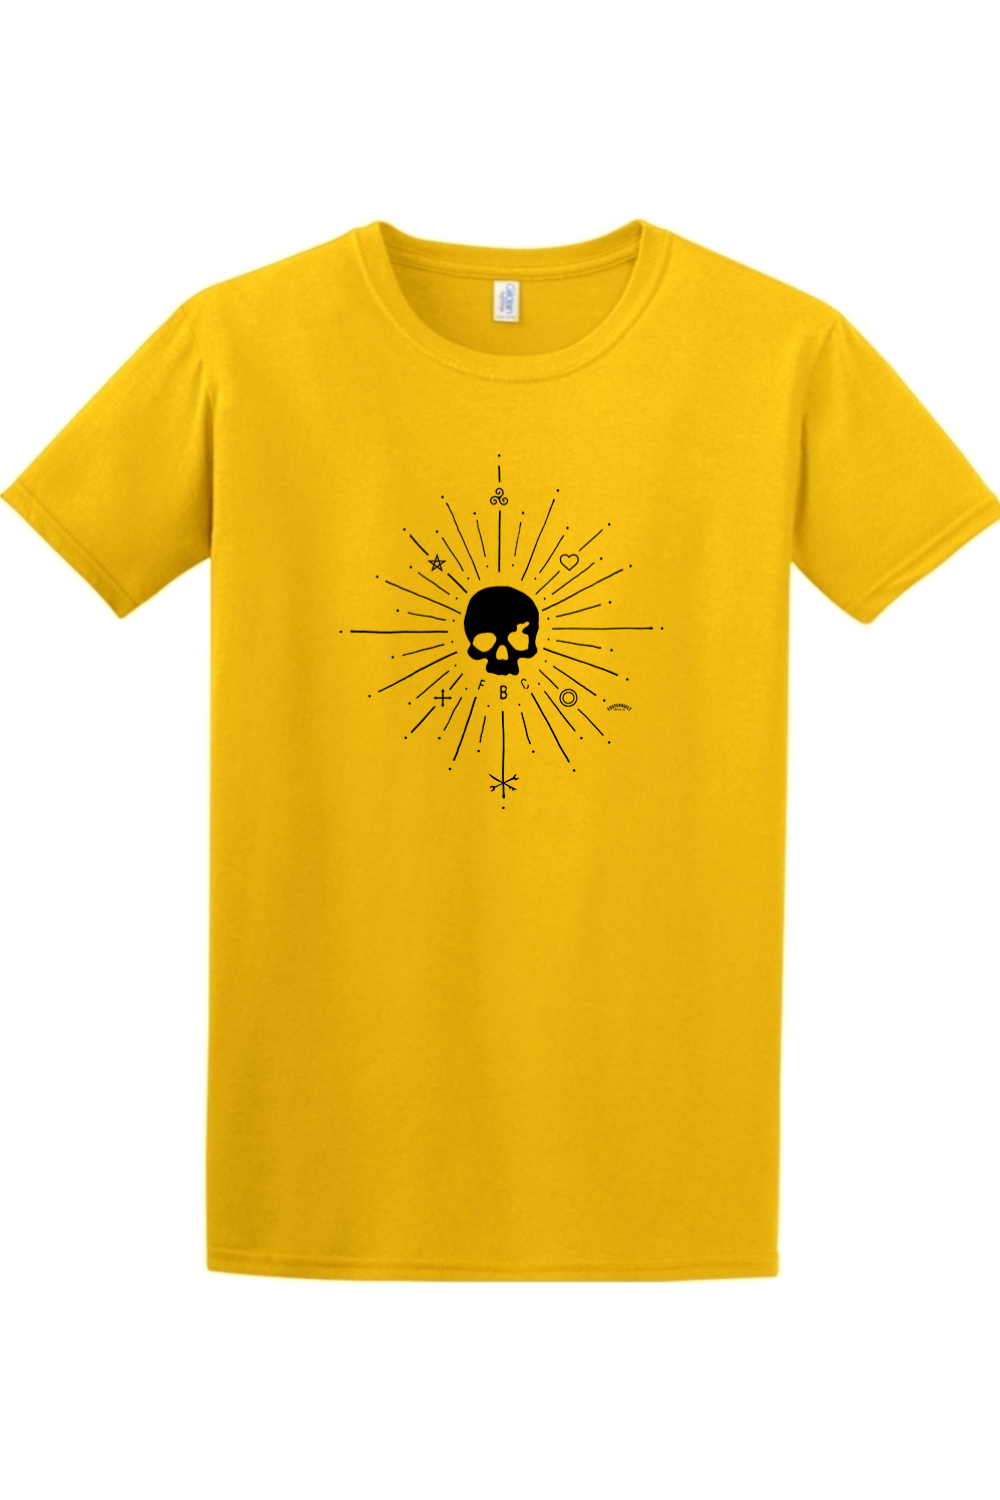 SUNBURST - Mens T-Shirt